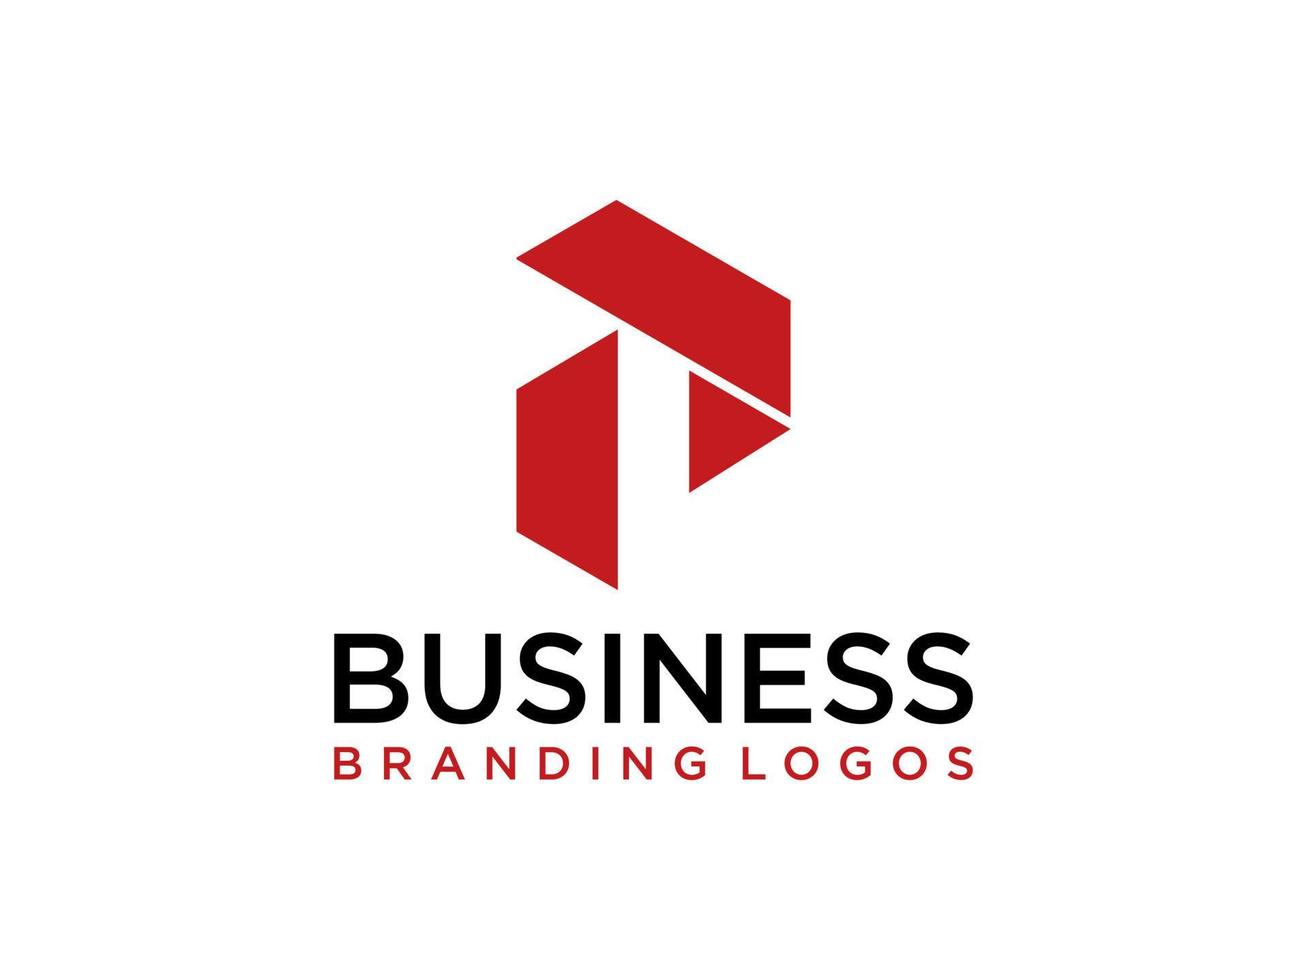 abstraktes anfangsbuchstabe p-logo. rote geometrische Form isoliert auf weißem Hintergrund. verwendbar für Geschäfts- und Markenlogos. flaches Vektor-Logo-Design-Vorlagenelement. vektor